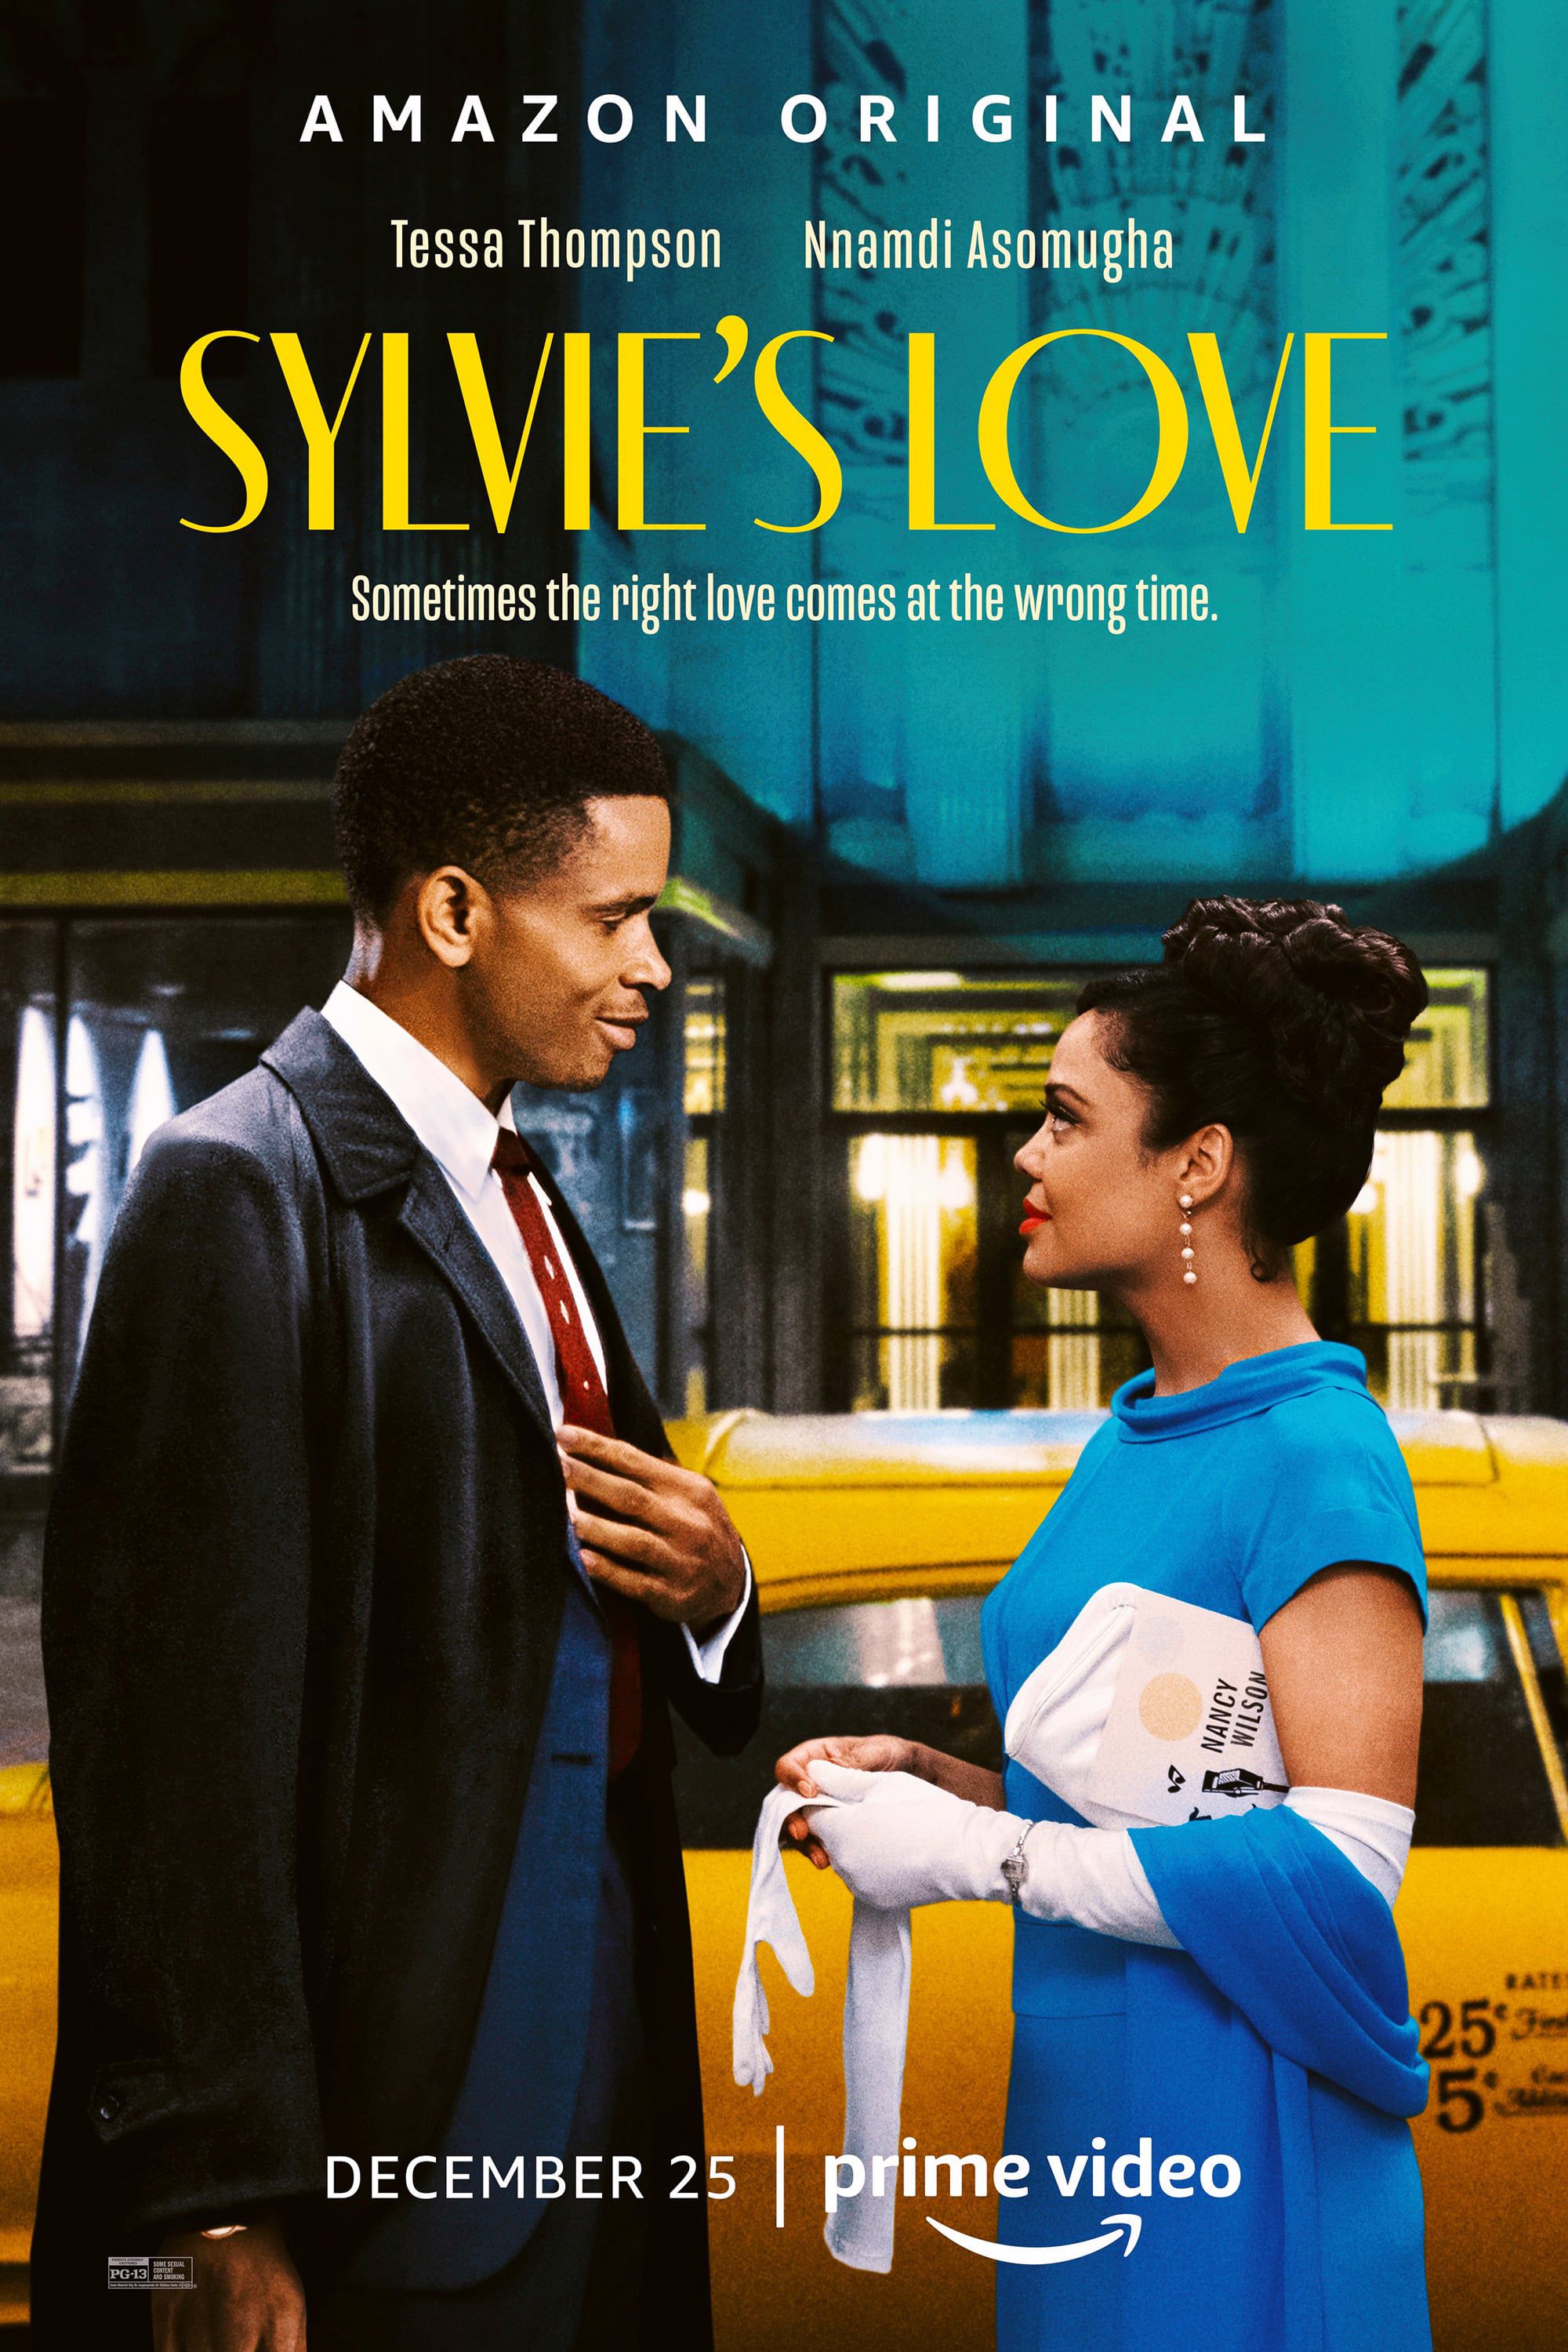 Pour l'amour de Sylvie - Film (2020) streaming VF gratuit complet